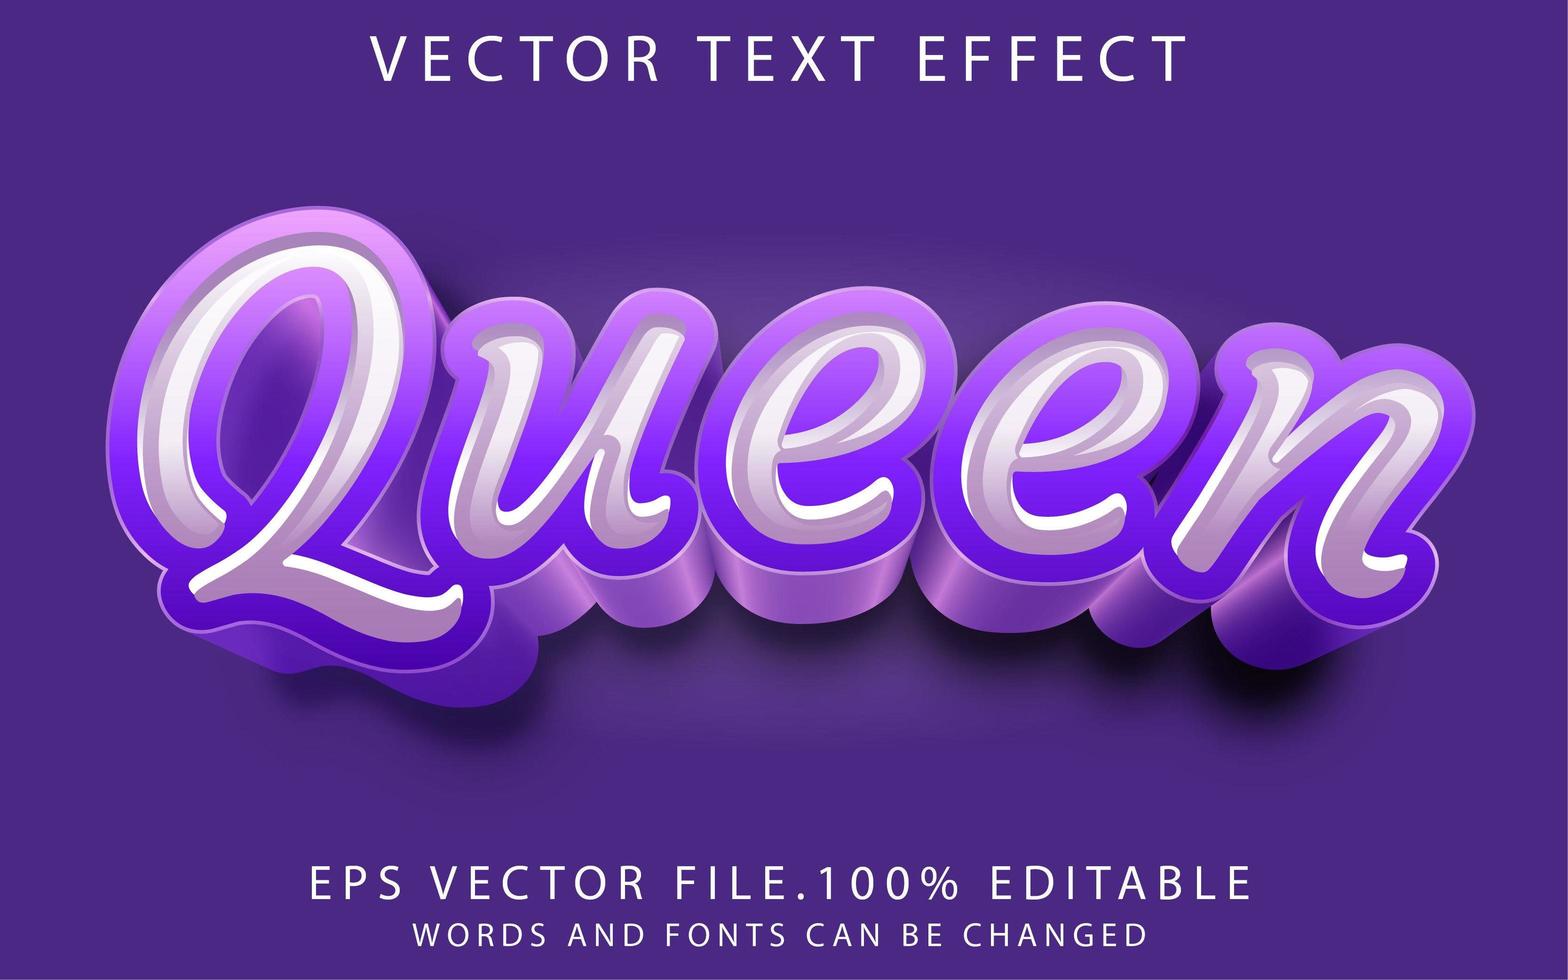 teksteffect koningin vector